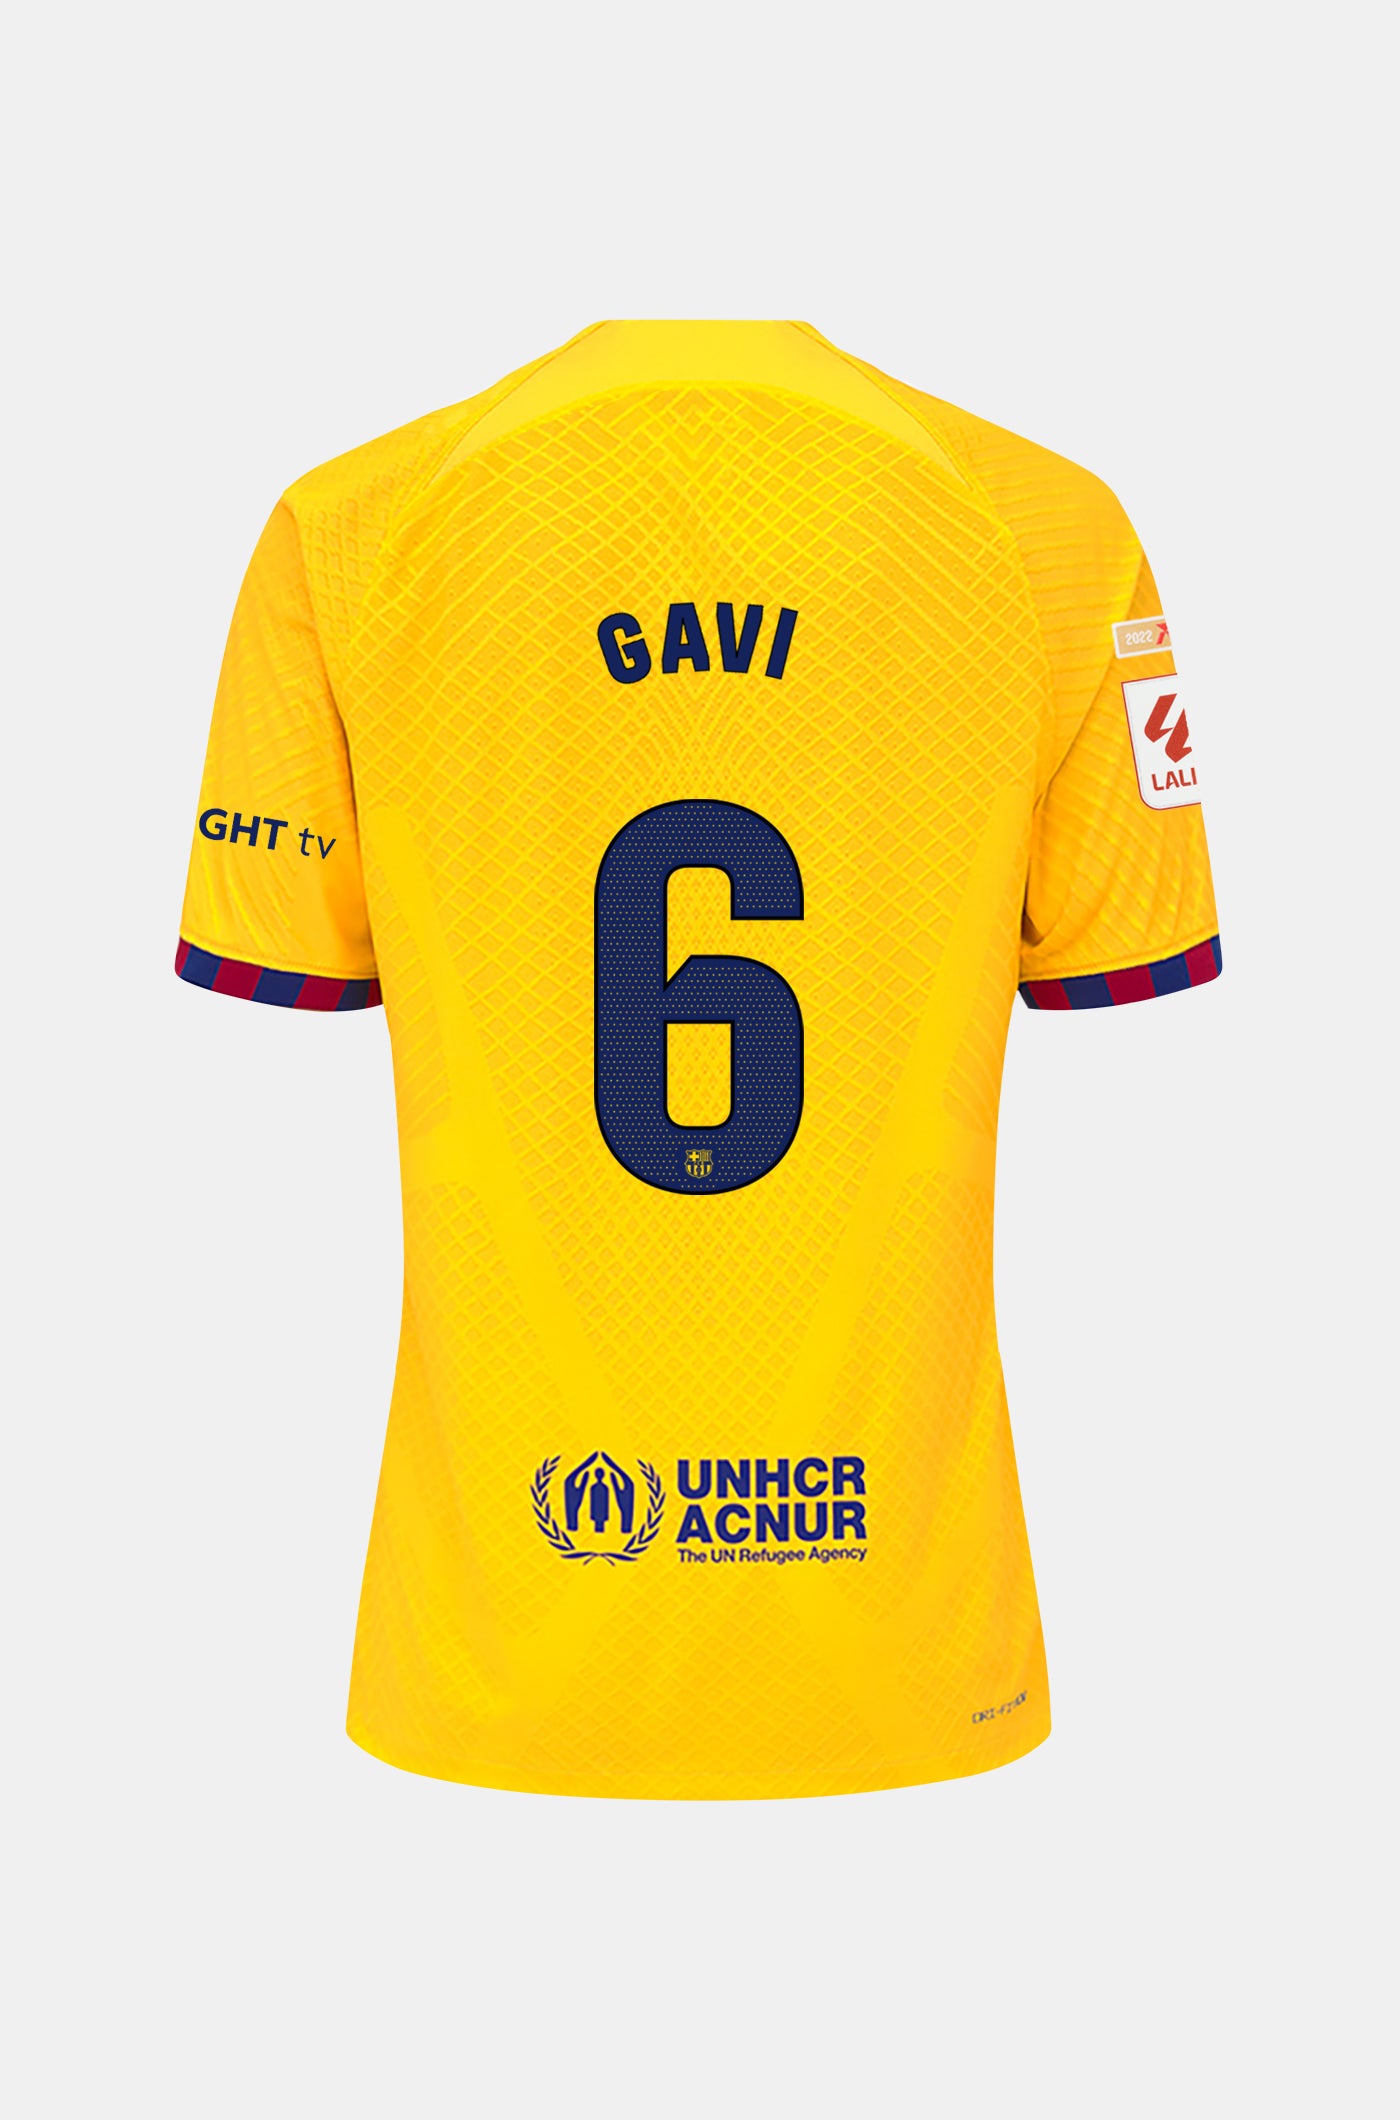 LFP FC Barcelona fourth shirt 23/24 Player’s Edition  - GAVI